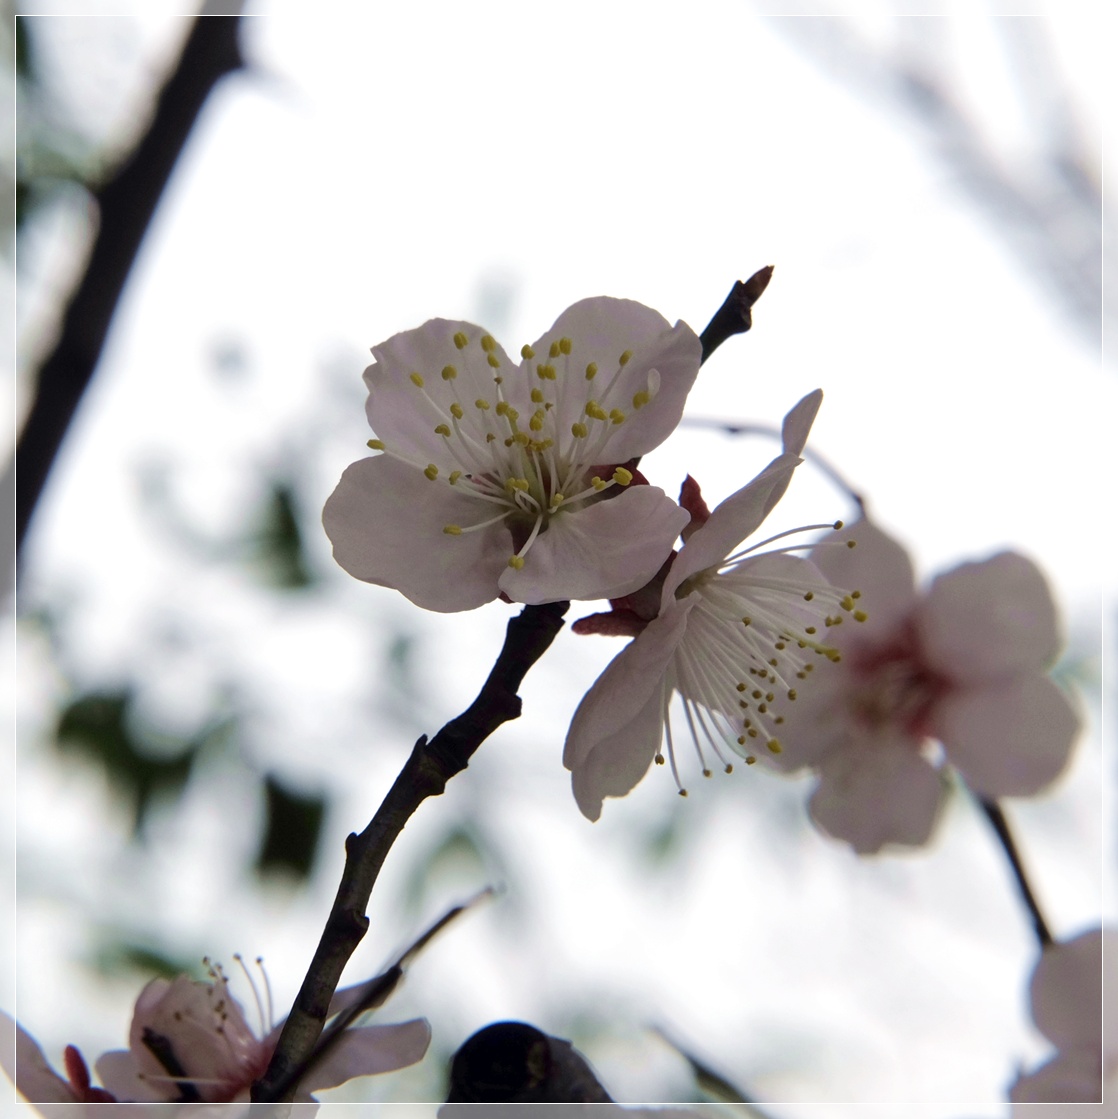 支那実桜 襍樹 古往今来347 緑 海気浴 襍にbloguru Bloguru